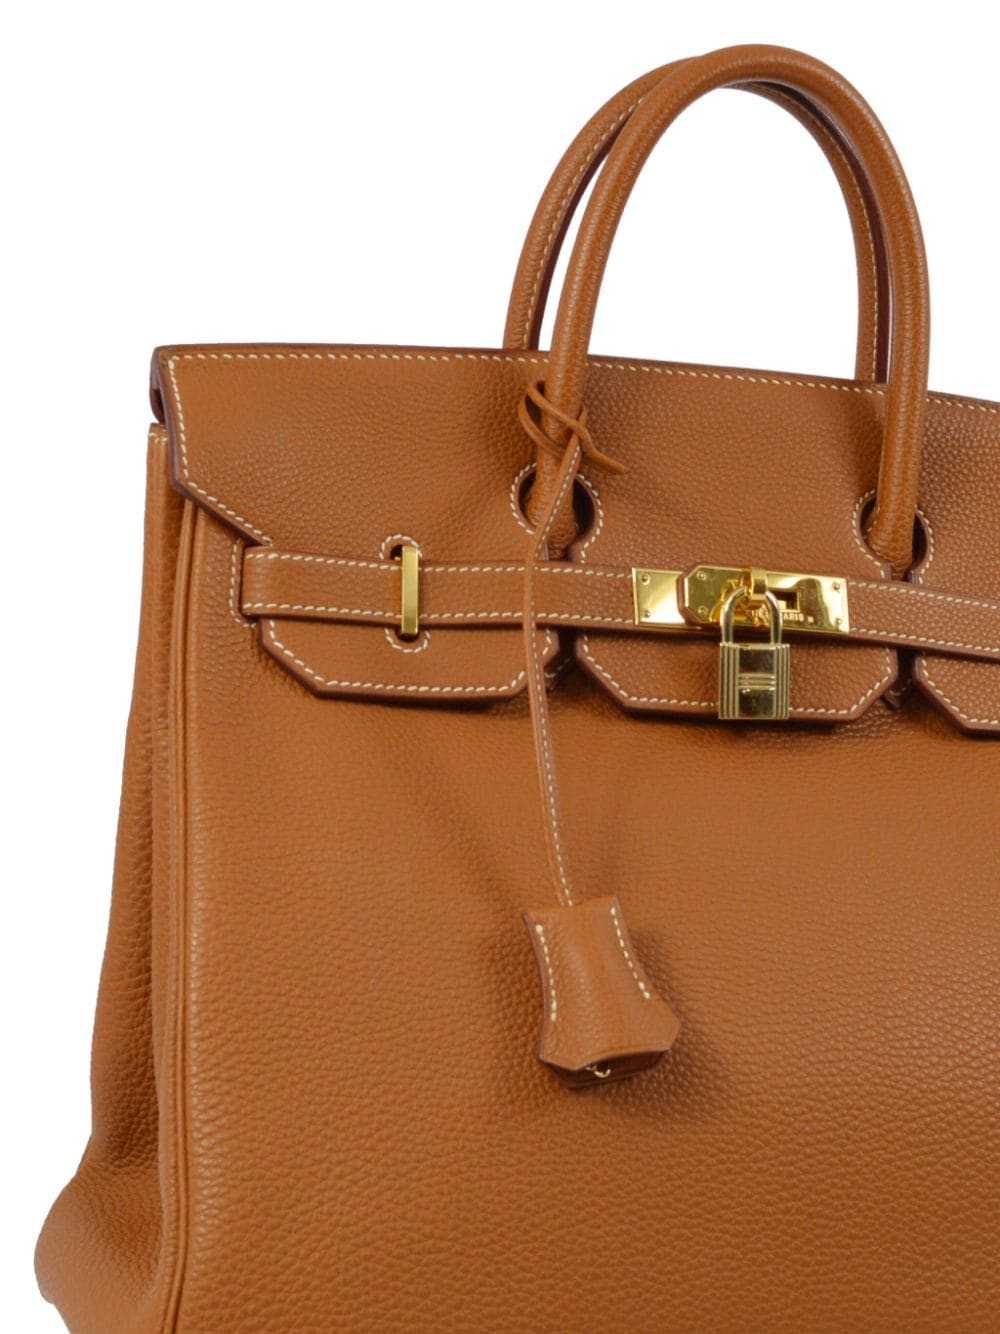 Hermès Pre-Owned 2001 Birkin 32 handbag - Brown - image 3